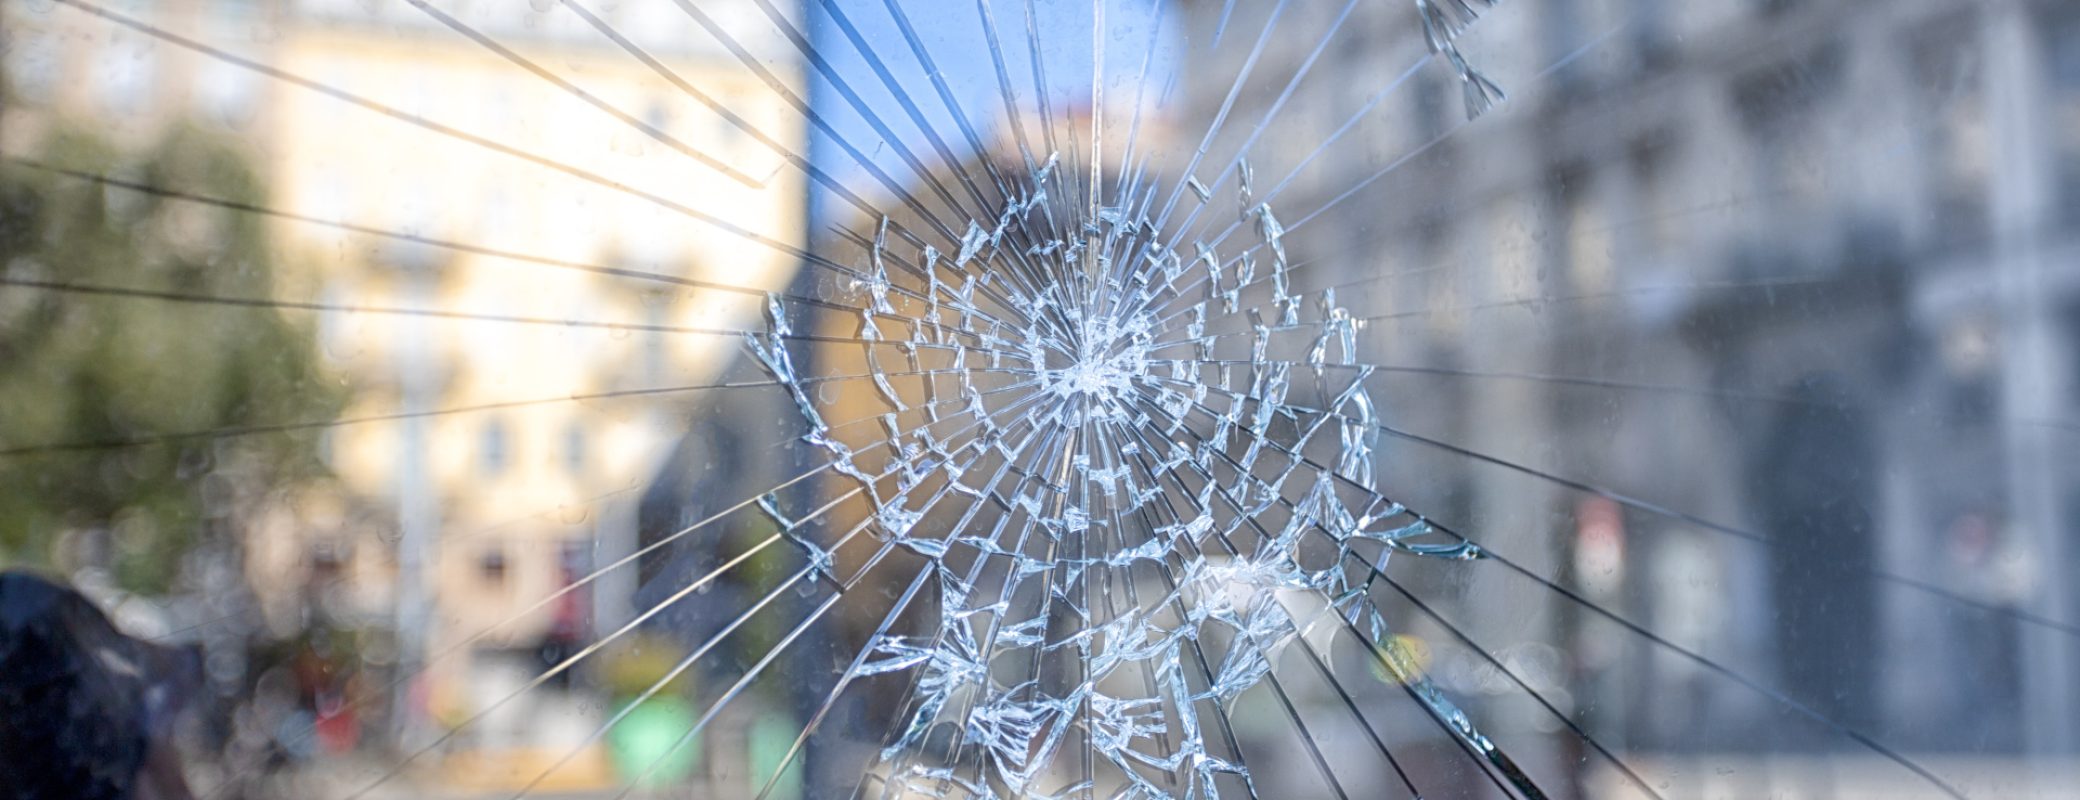 dégradation de vitre de porte brisée